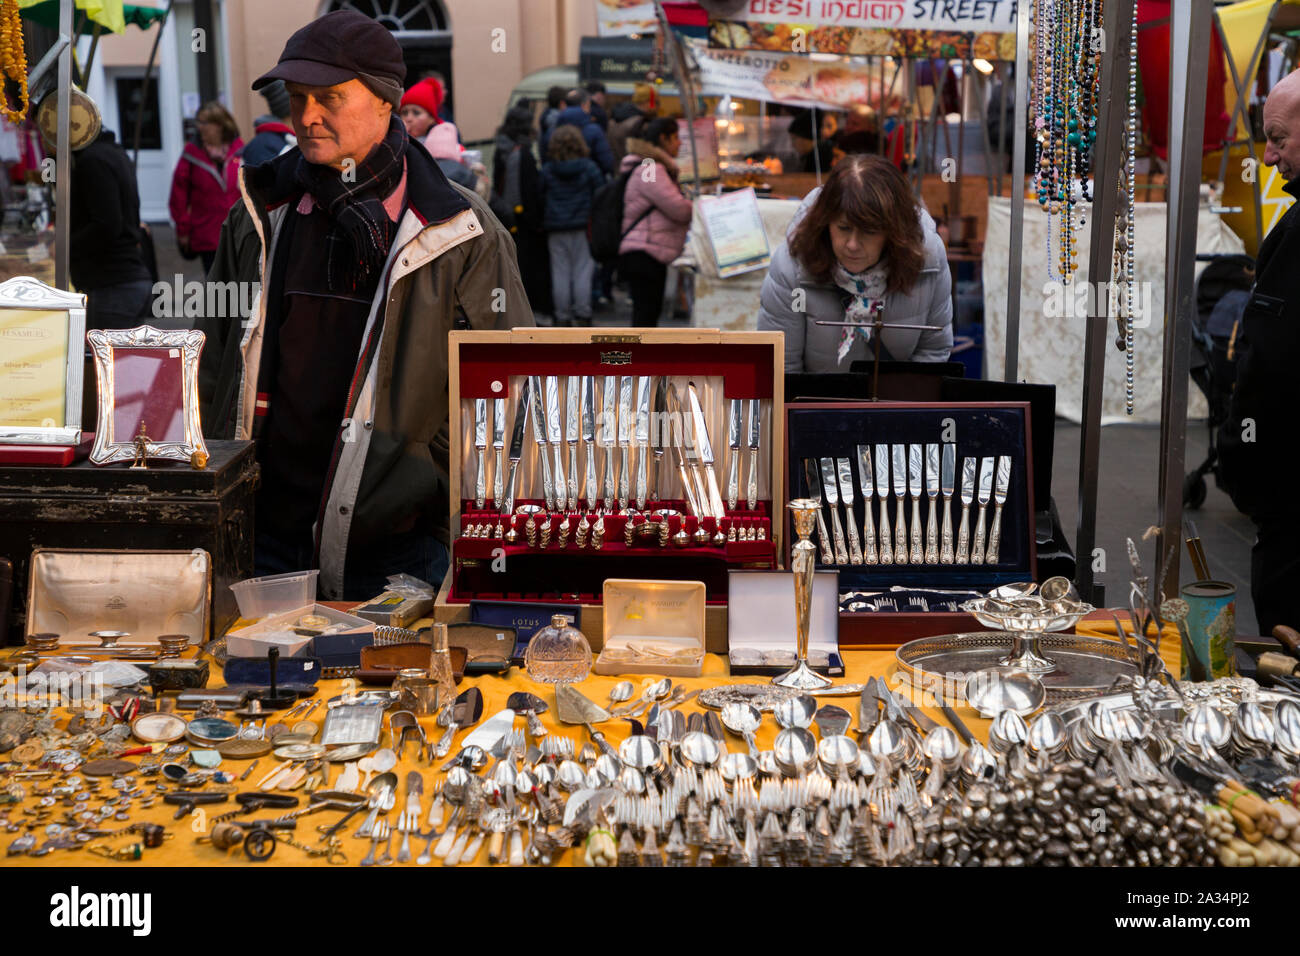 Standbesitzer/Halter mit einer Tabelle der sammelbaren Besteck/Messer, Gabeln usw. Am stall Sammlerstücken und Antiquitäten Markt, Greenwich Market zu Weihnachten. London. Großbritannien (105) Stockfoto